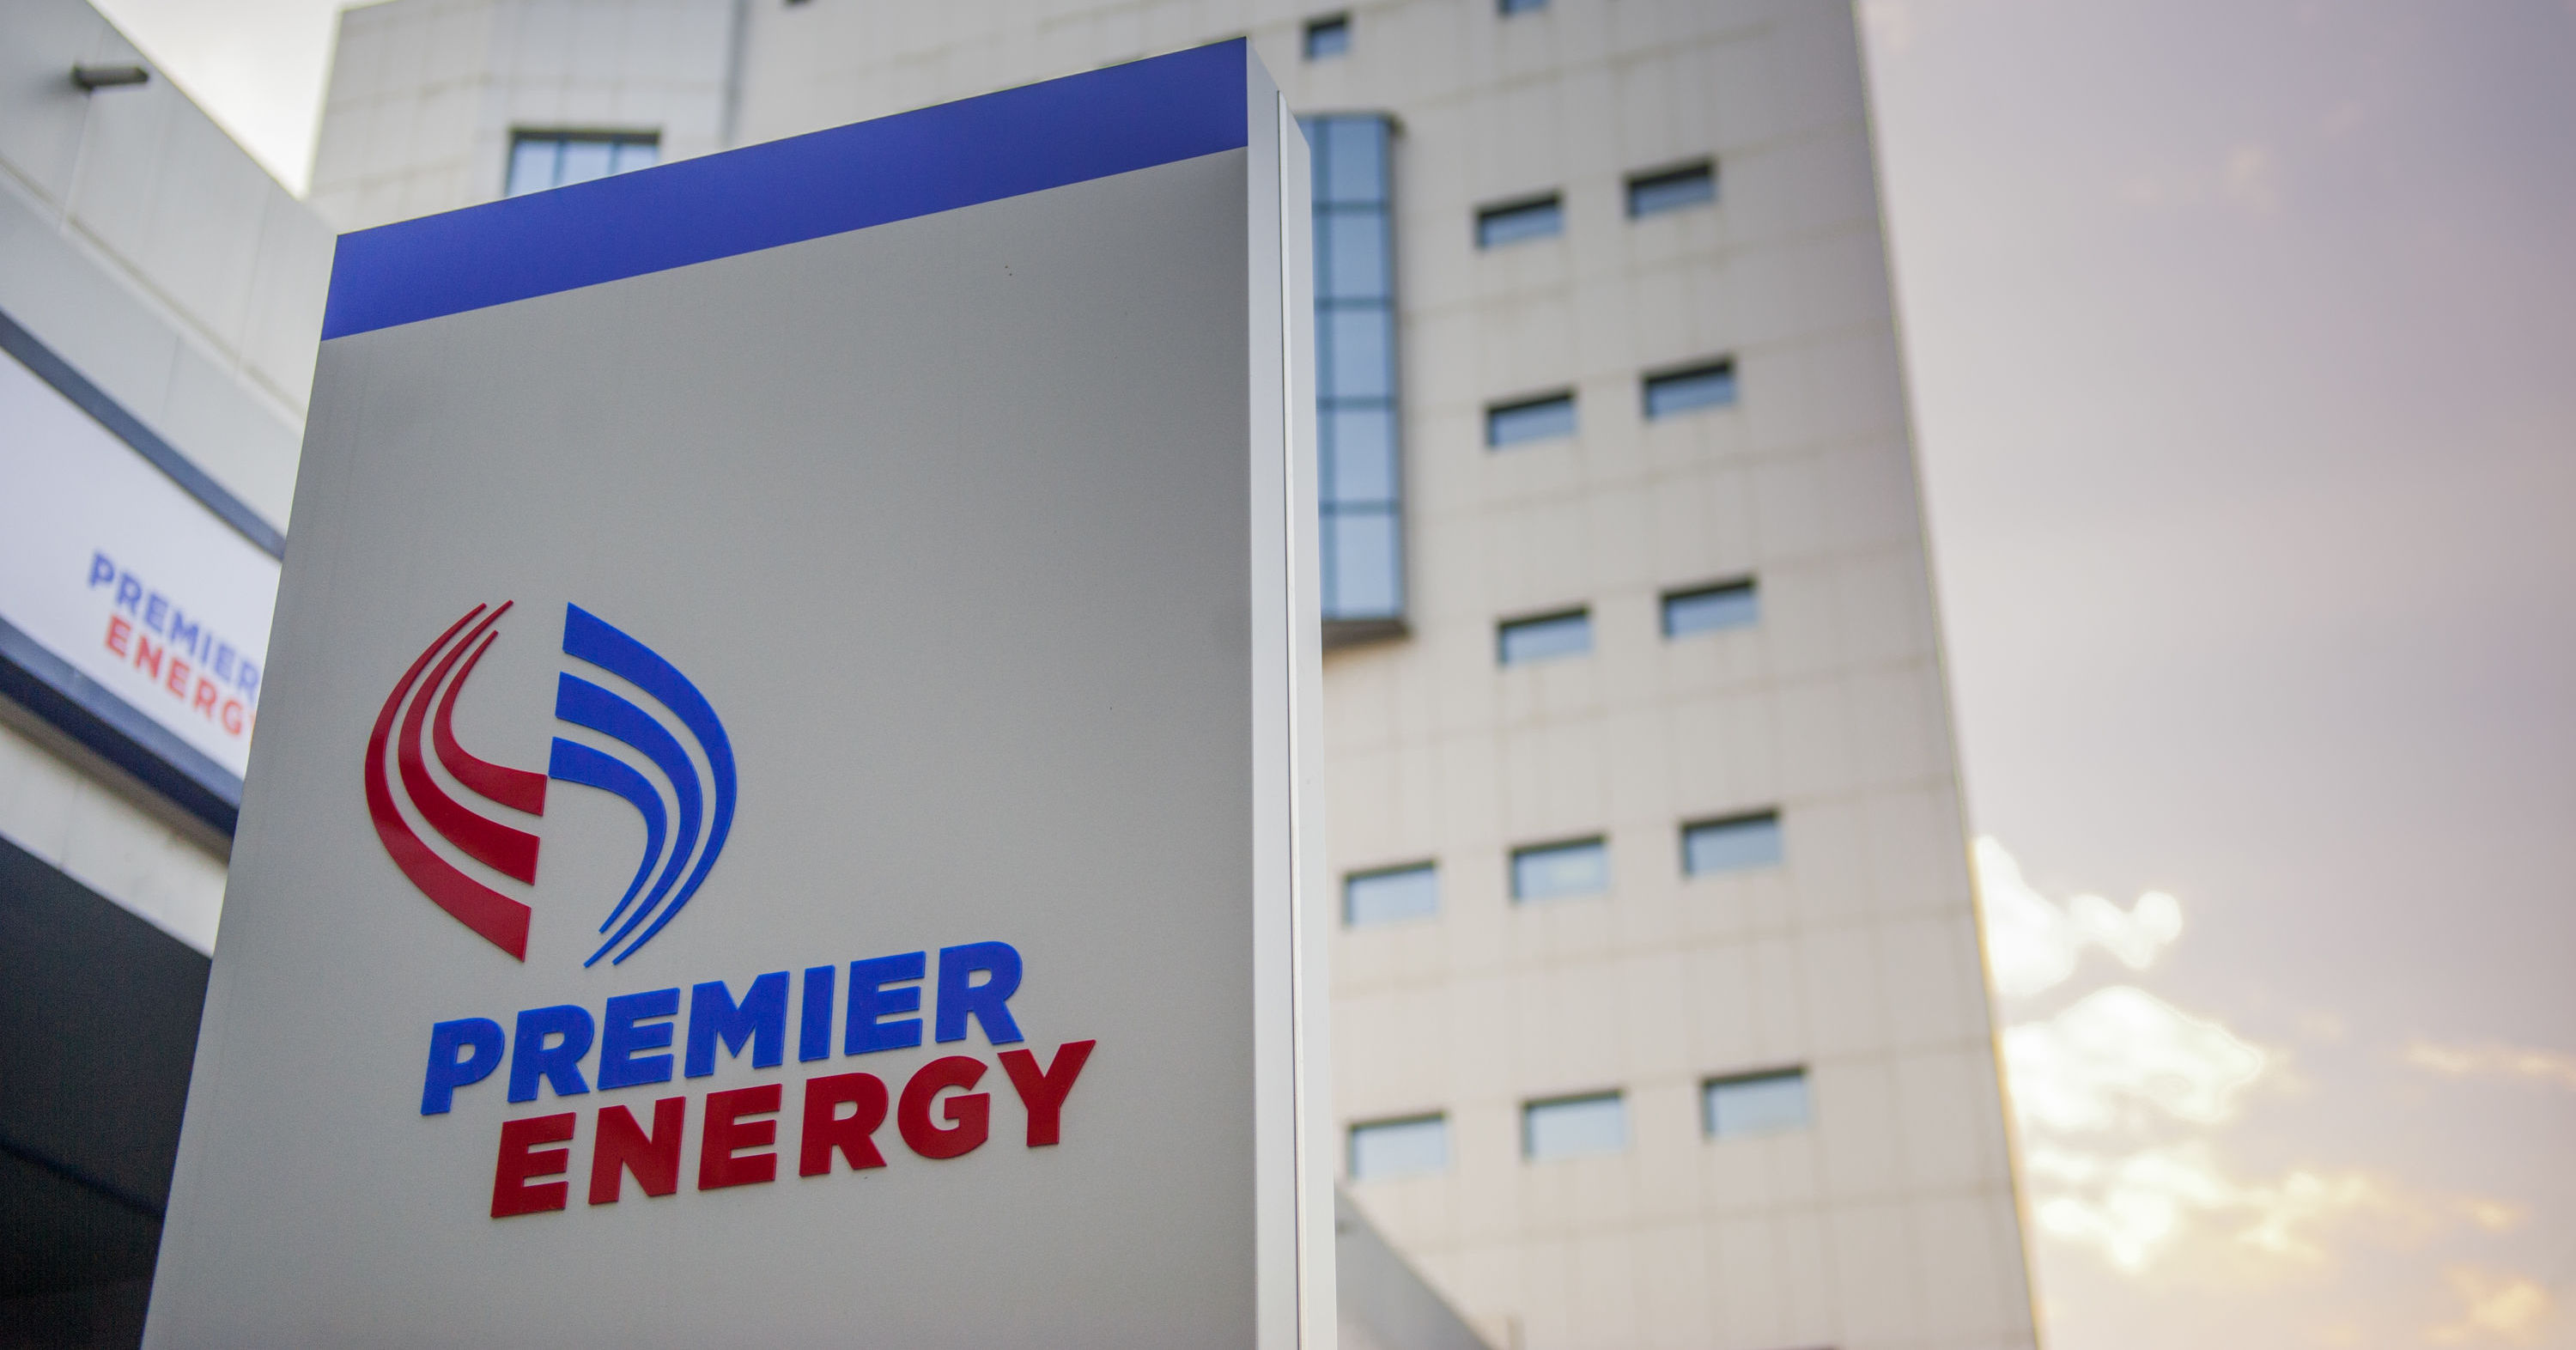 КЧС обязала Premier Energy направить запрос о корректировке тарифов